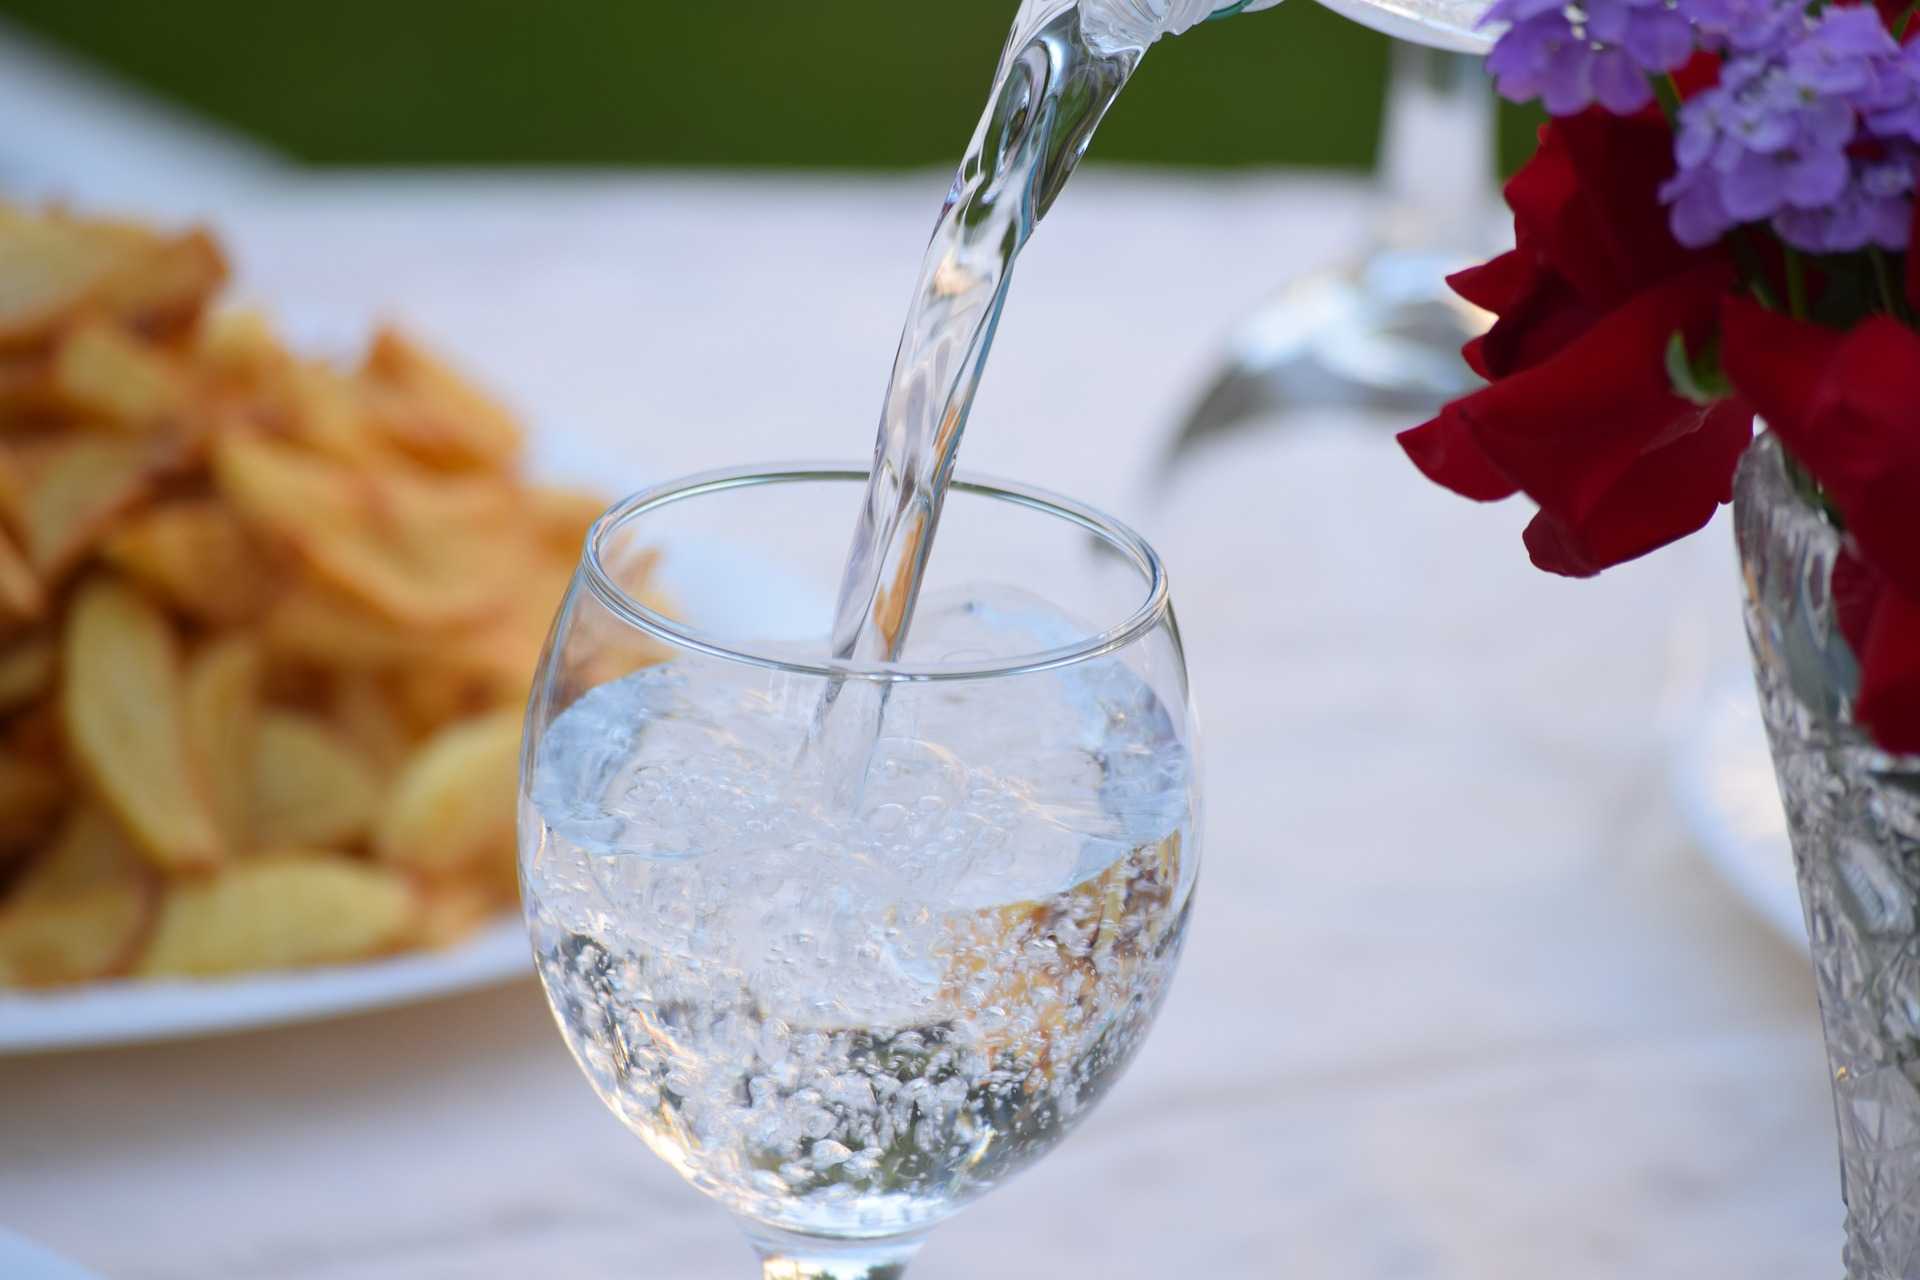 Awas! Sering Kurang Minum Air Putih Bisa Menimbulkan Berbagai Resiko Penyakit, Ini Penjelasannya